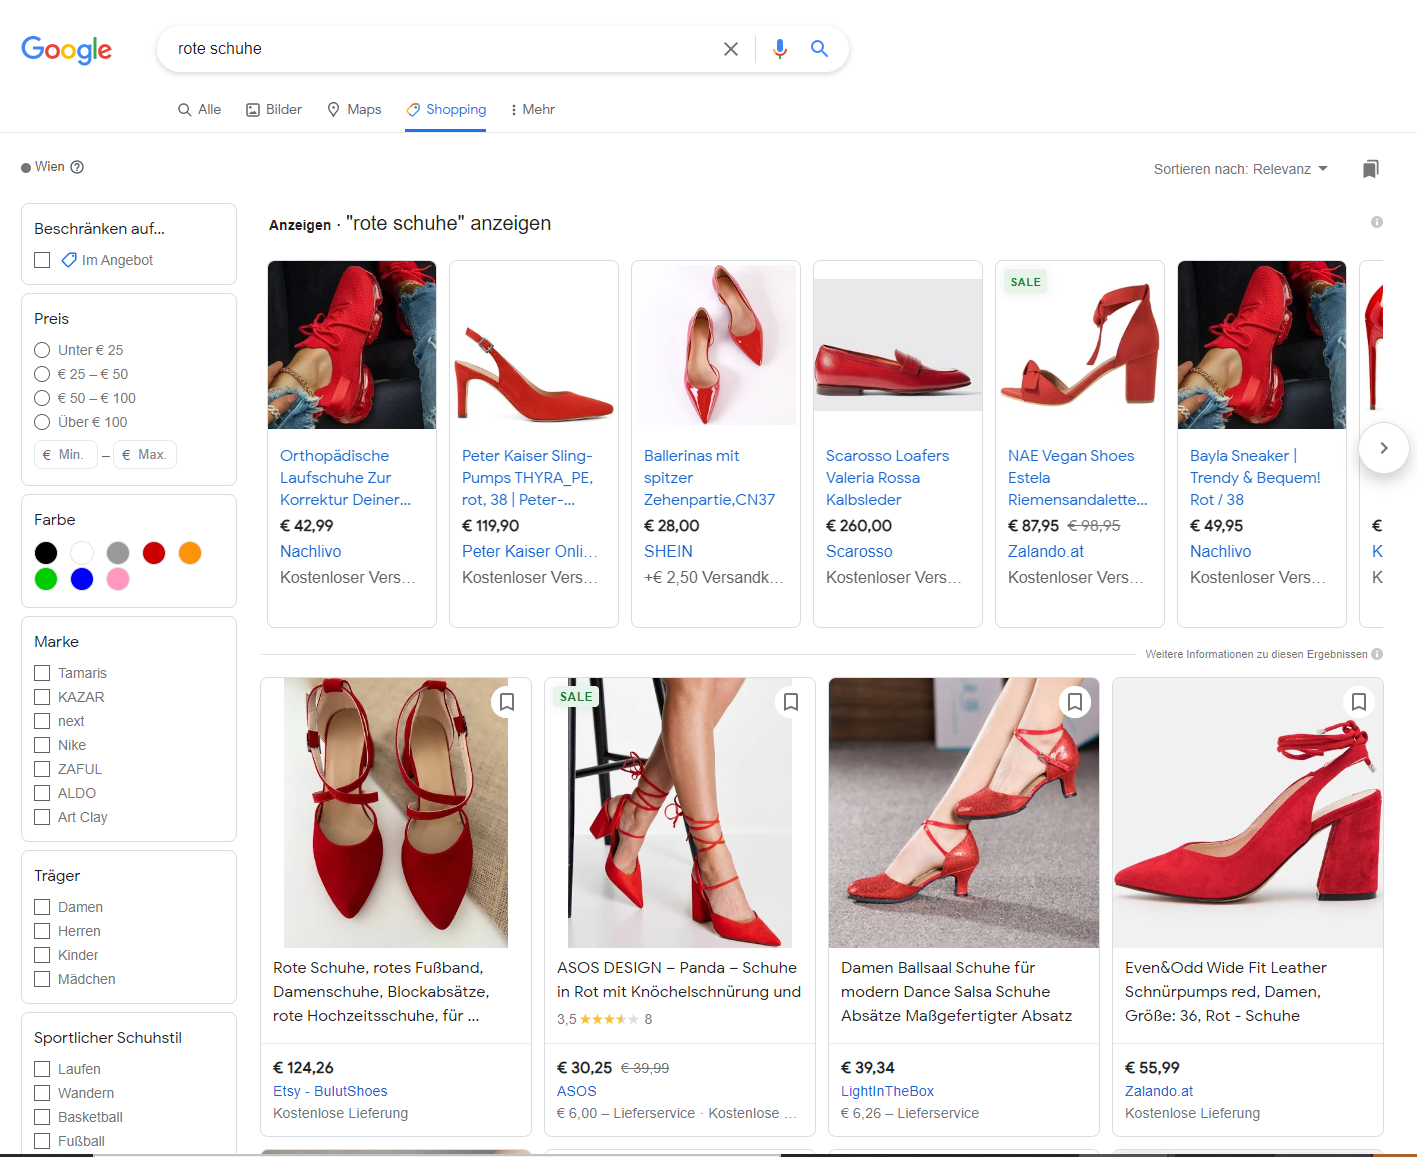 Suchergebnisse zum Begriff "rote Schuhe", wenn man oben auf Shopping klickt.